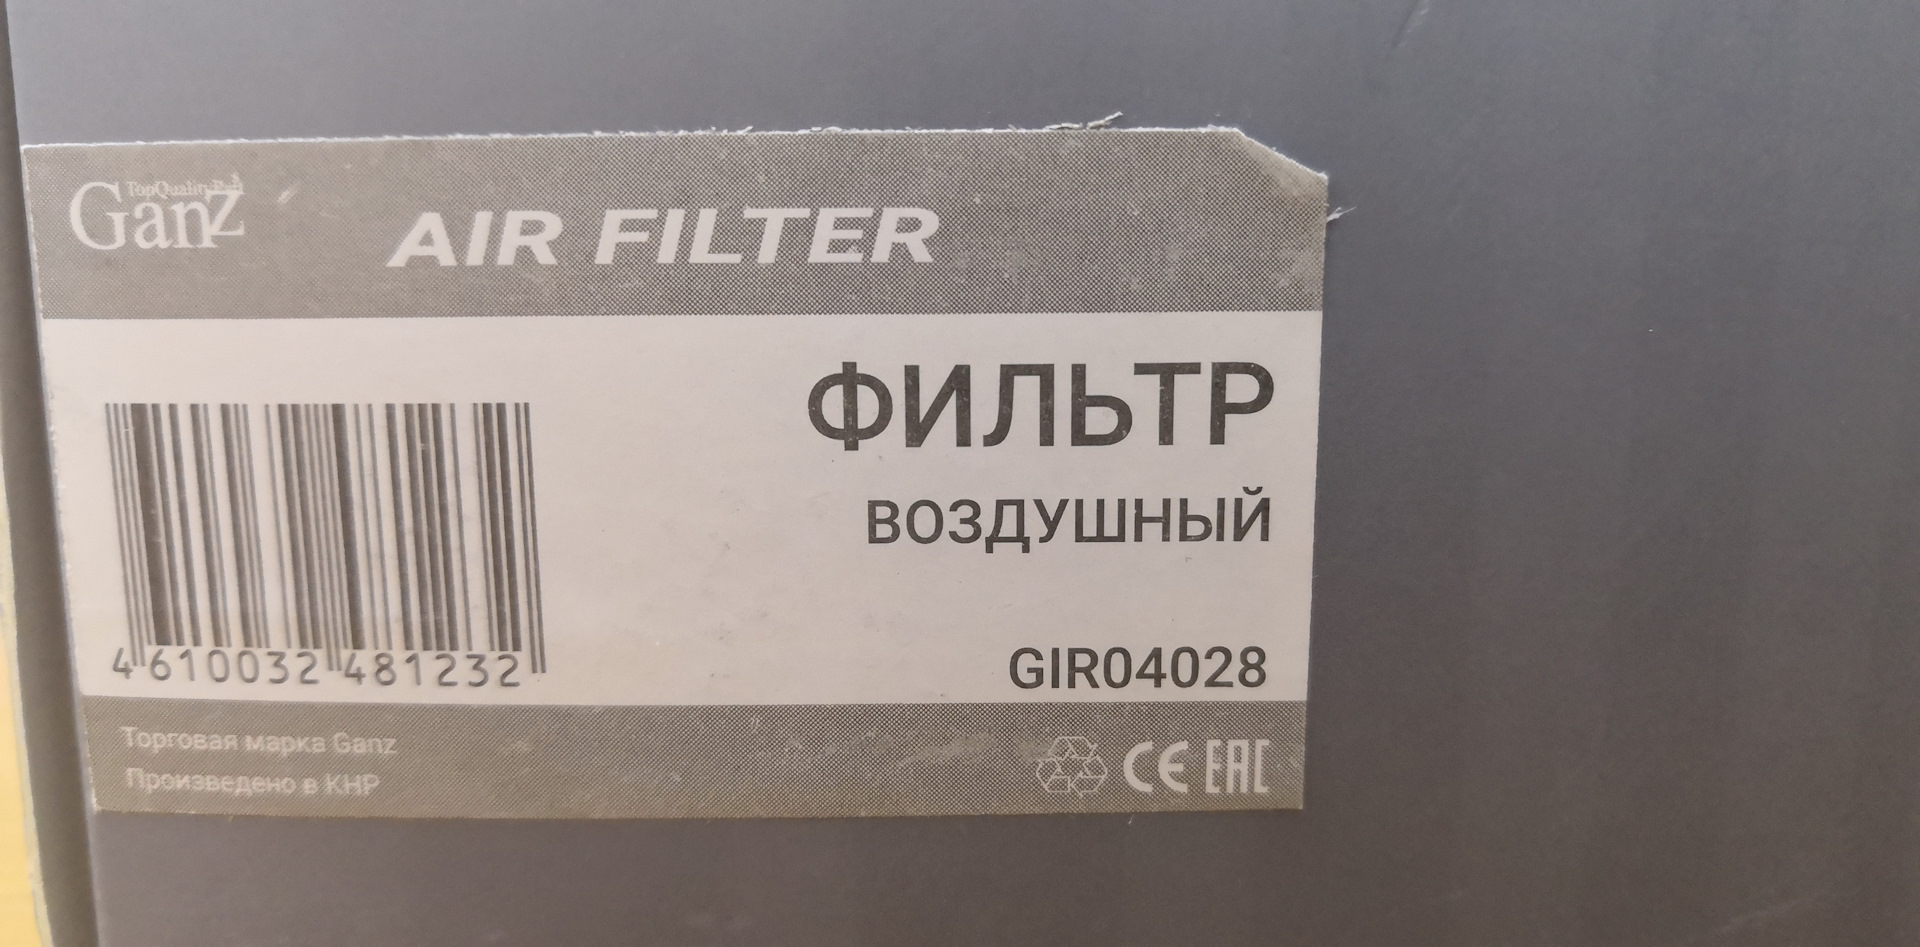 Фильтр воздушный каптур 1.6. Ganz gir04028. Ganz запчасти. Фильтр масляный ganz gir01010. Ganz gir01012 - фильтр масляный.